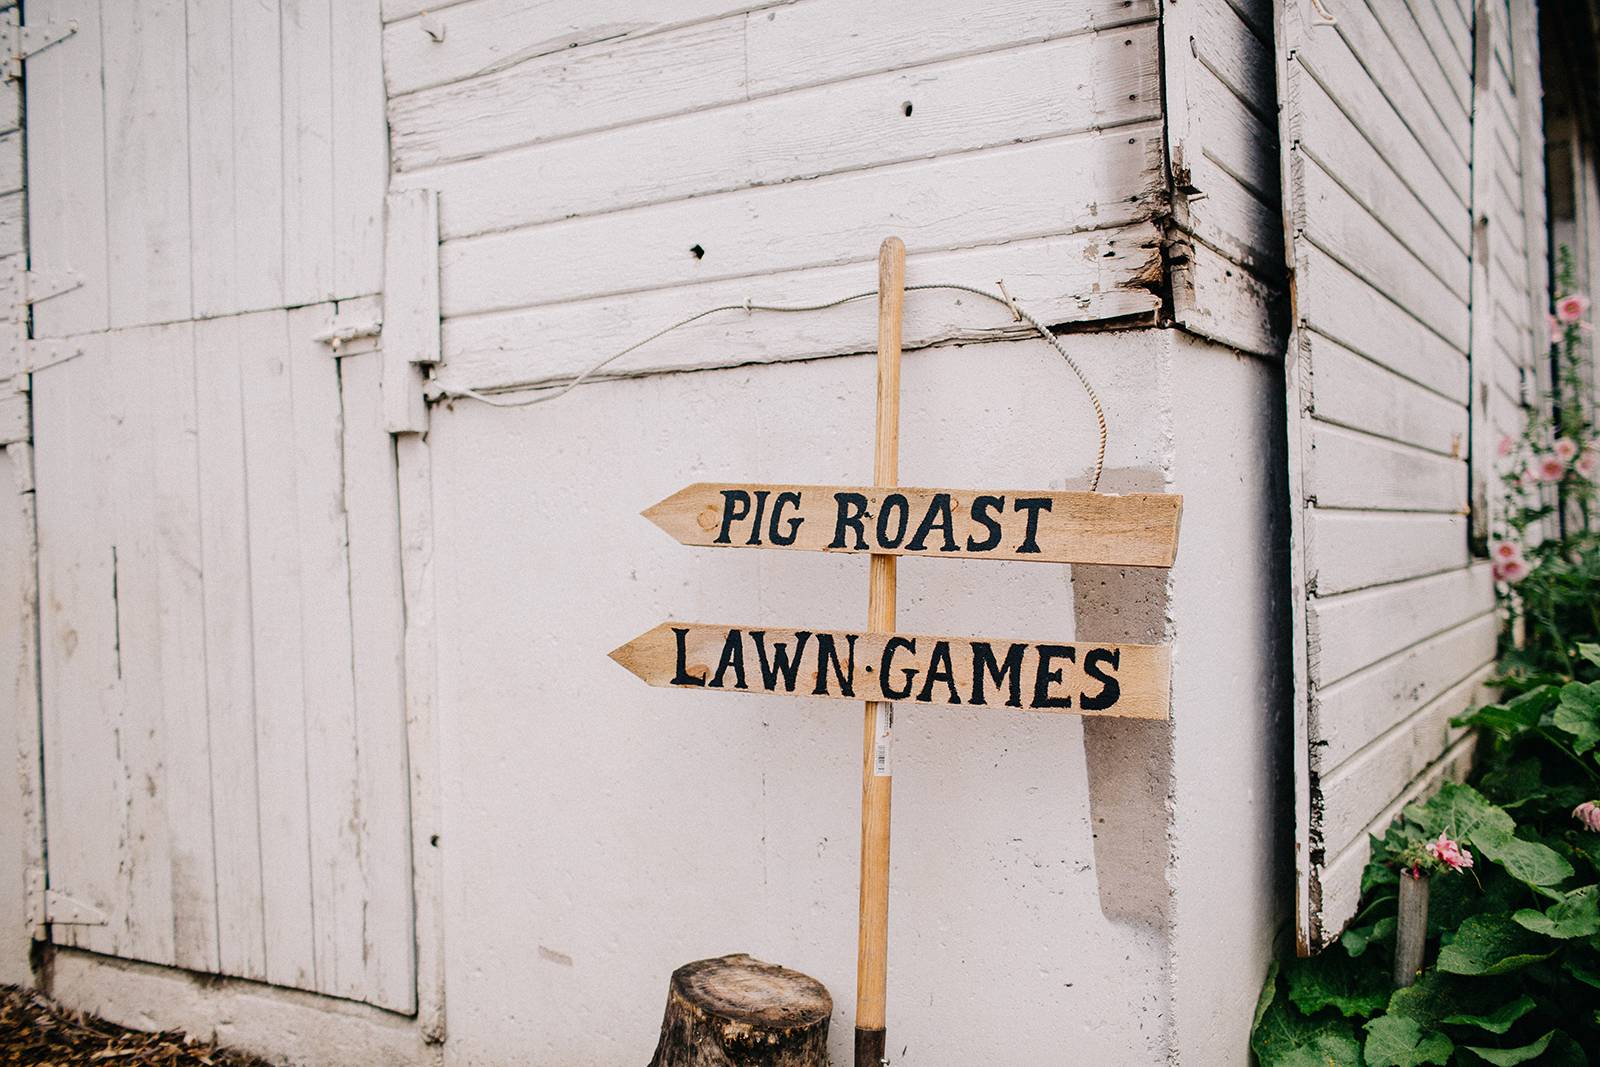 pig roast lawn games wedding events sign, signage ideas, farm wedding